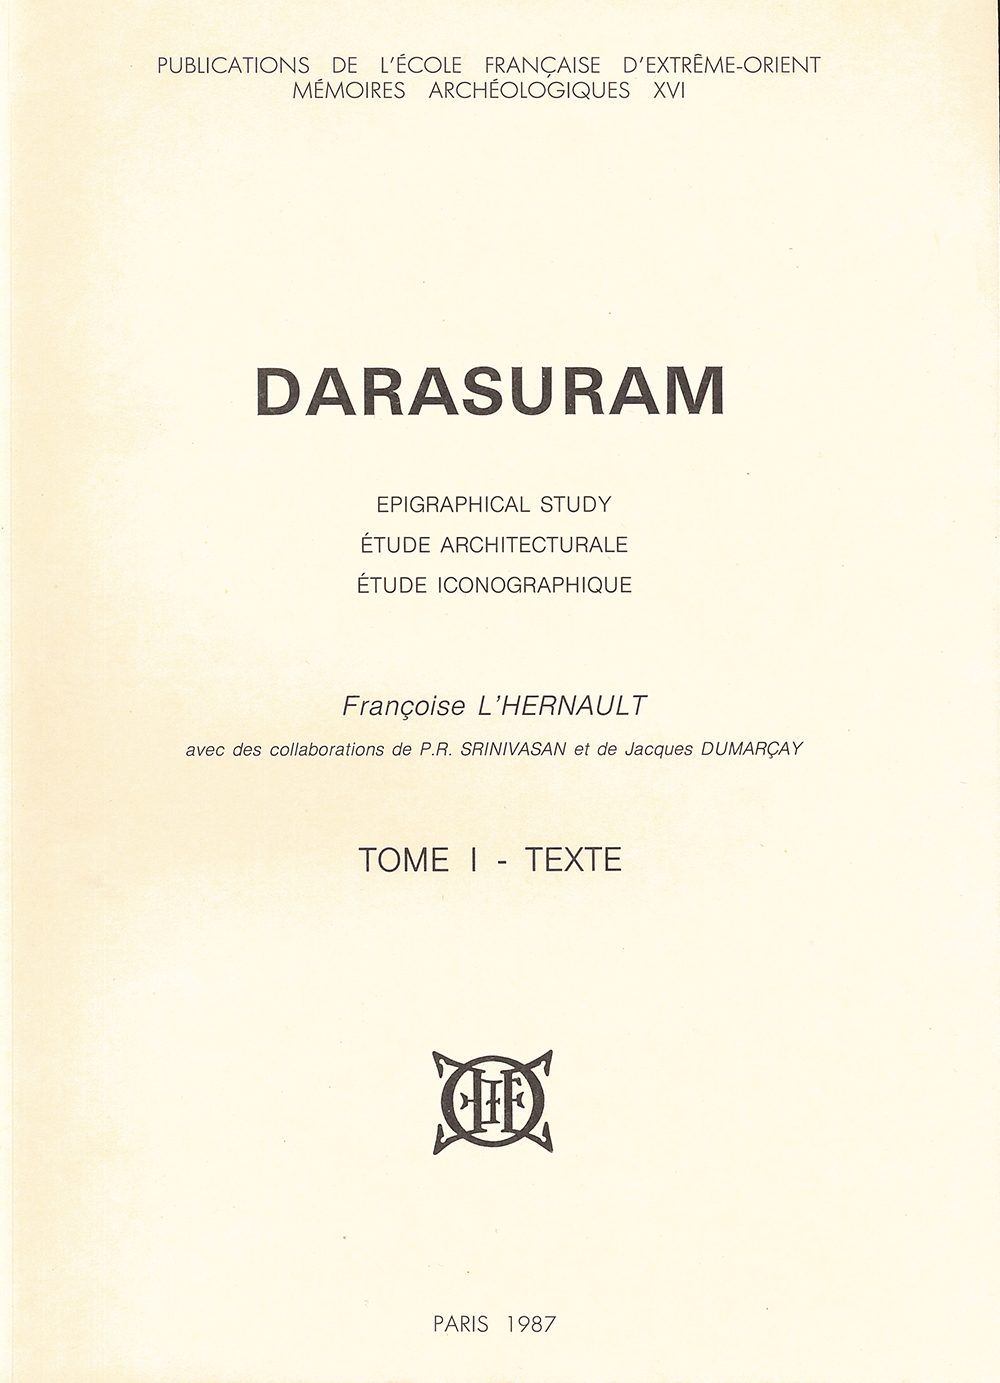 Darasuram : Epigraphical study, étude architecturale, étude iconographique